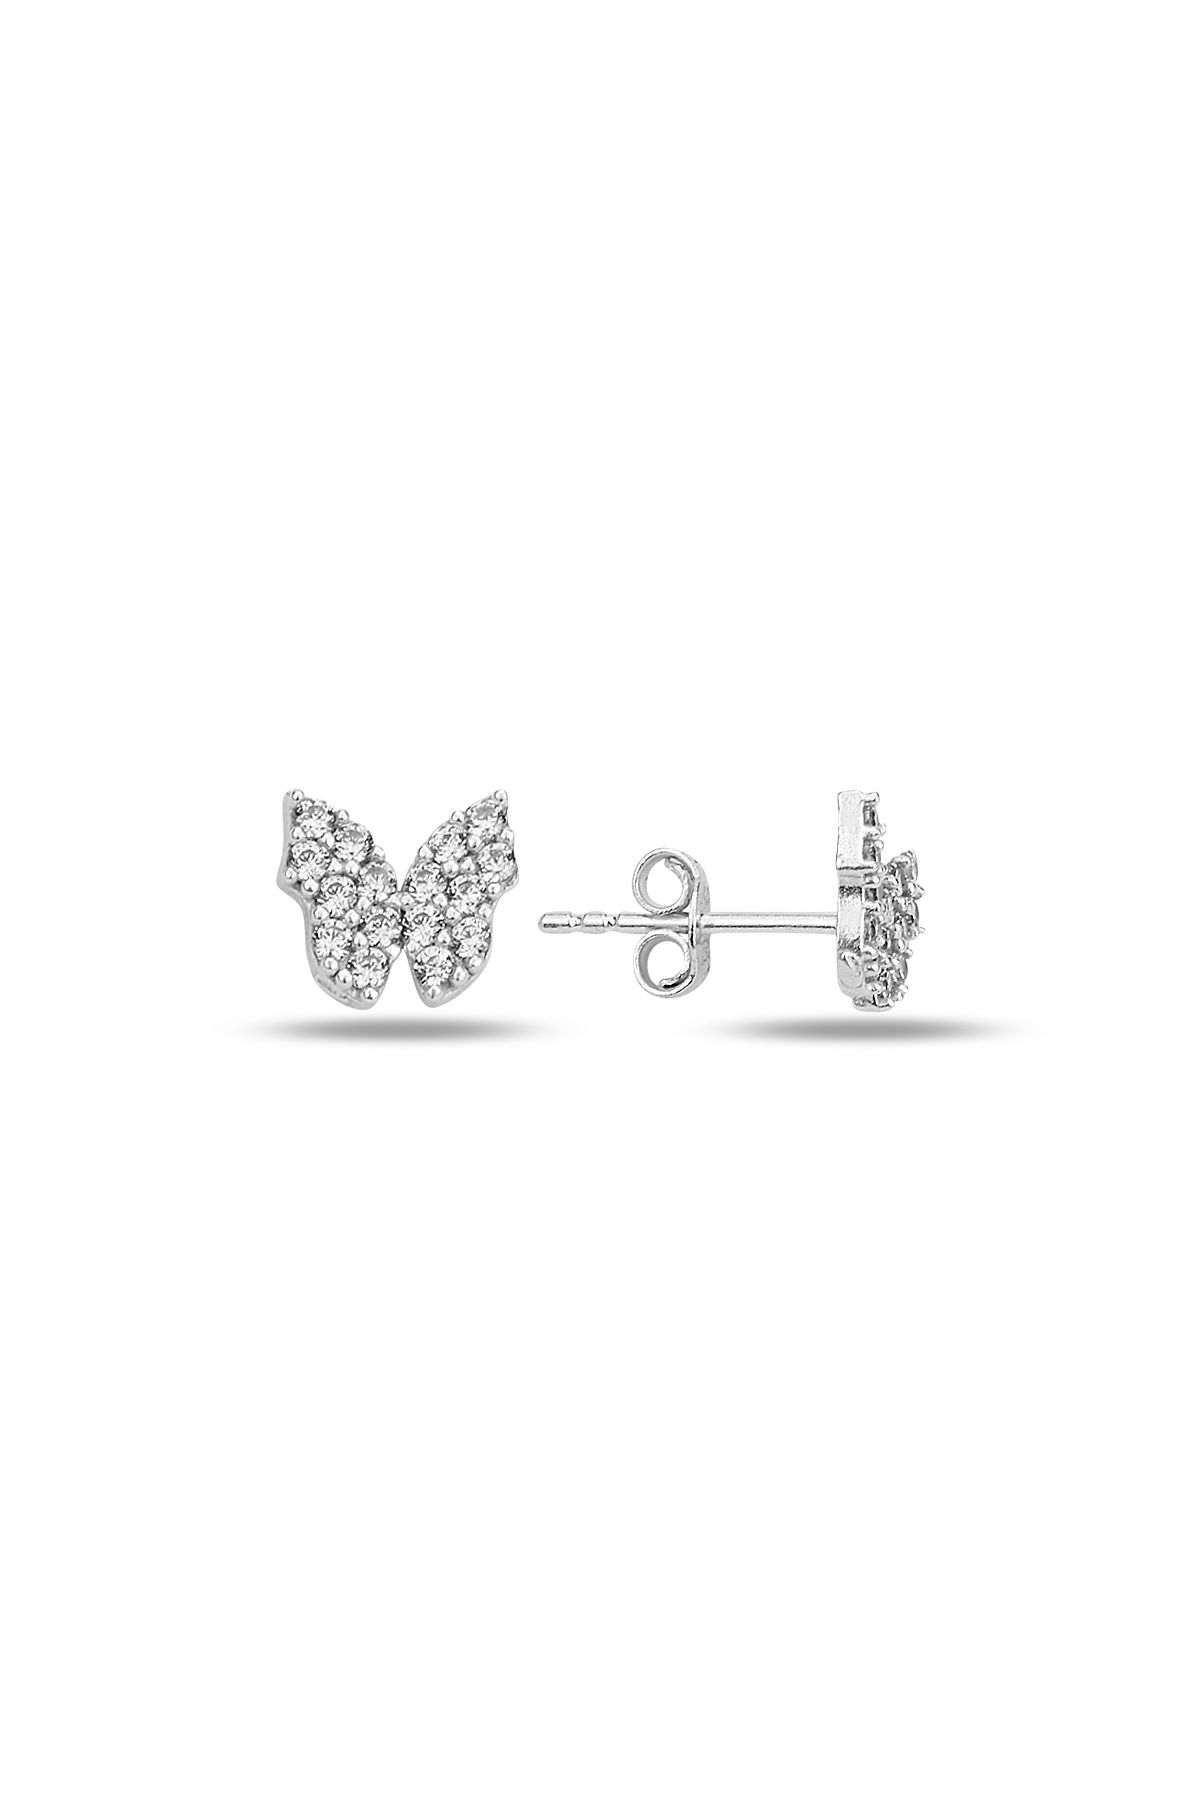 KAR DİAMOND Gümüş Zirkon Taşlı Minik Kelebek Modeli Küpe - Sertifikalı